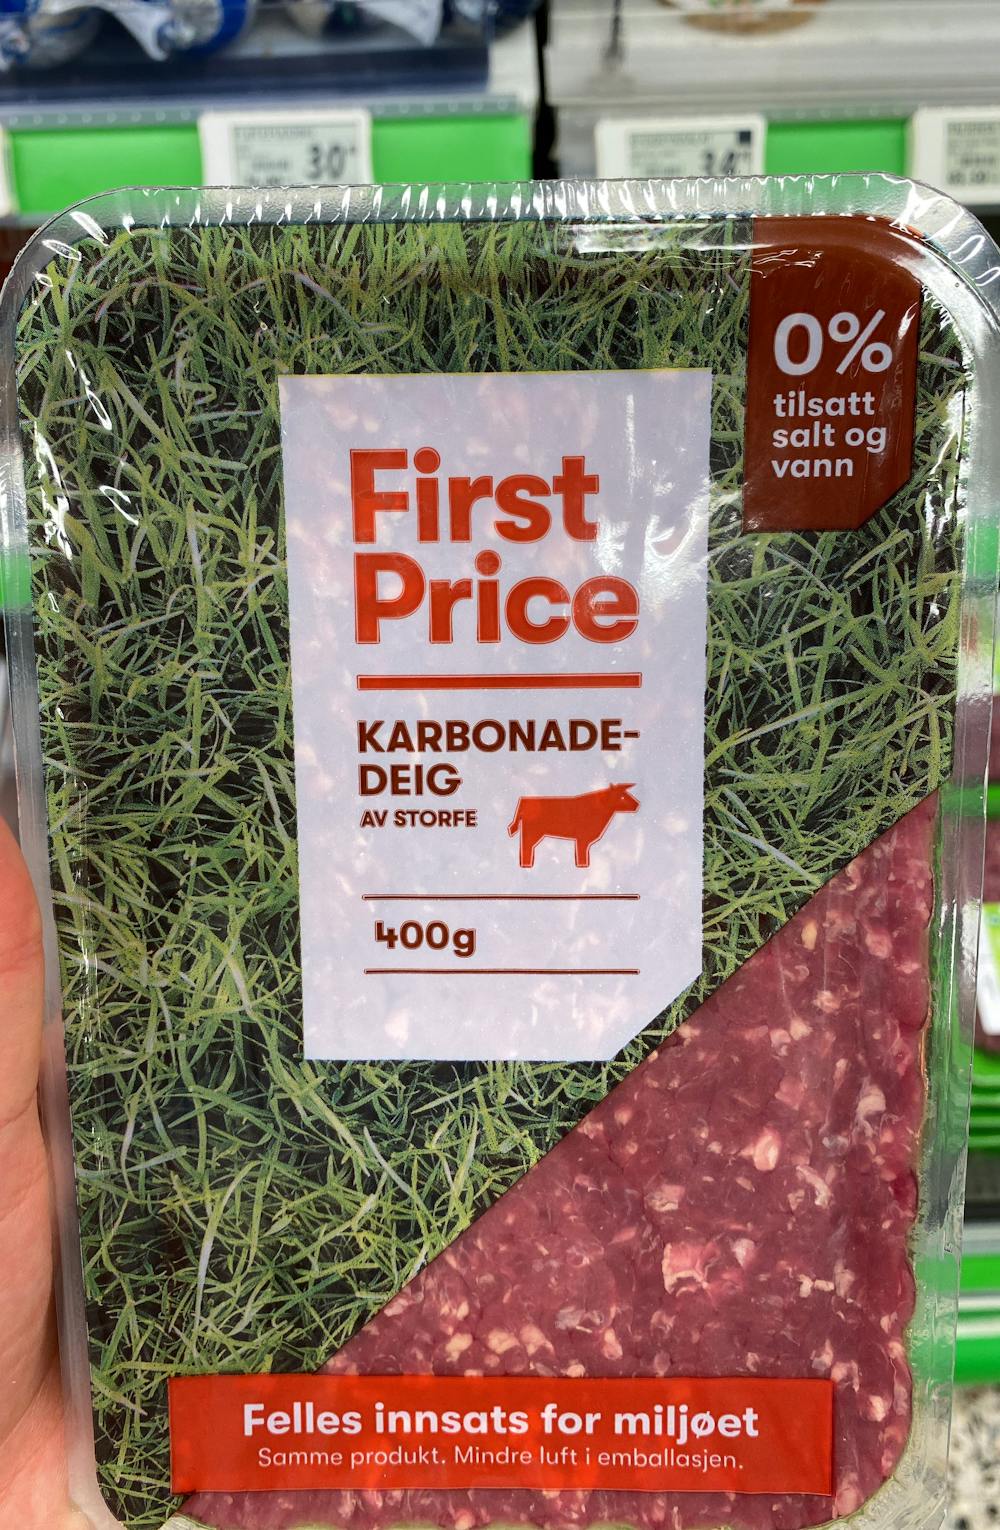 Karbonadedeig, First Price